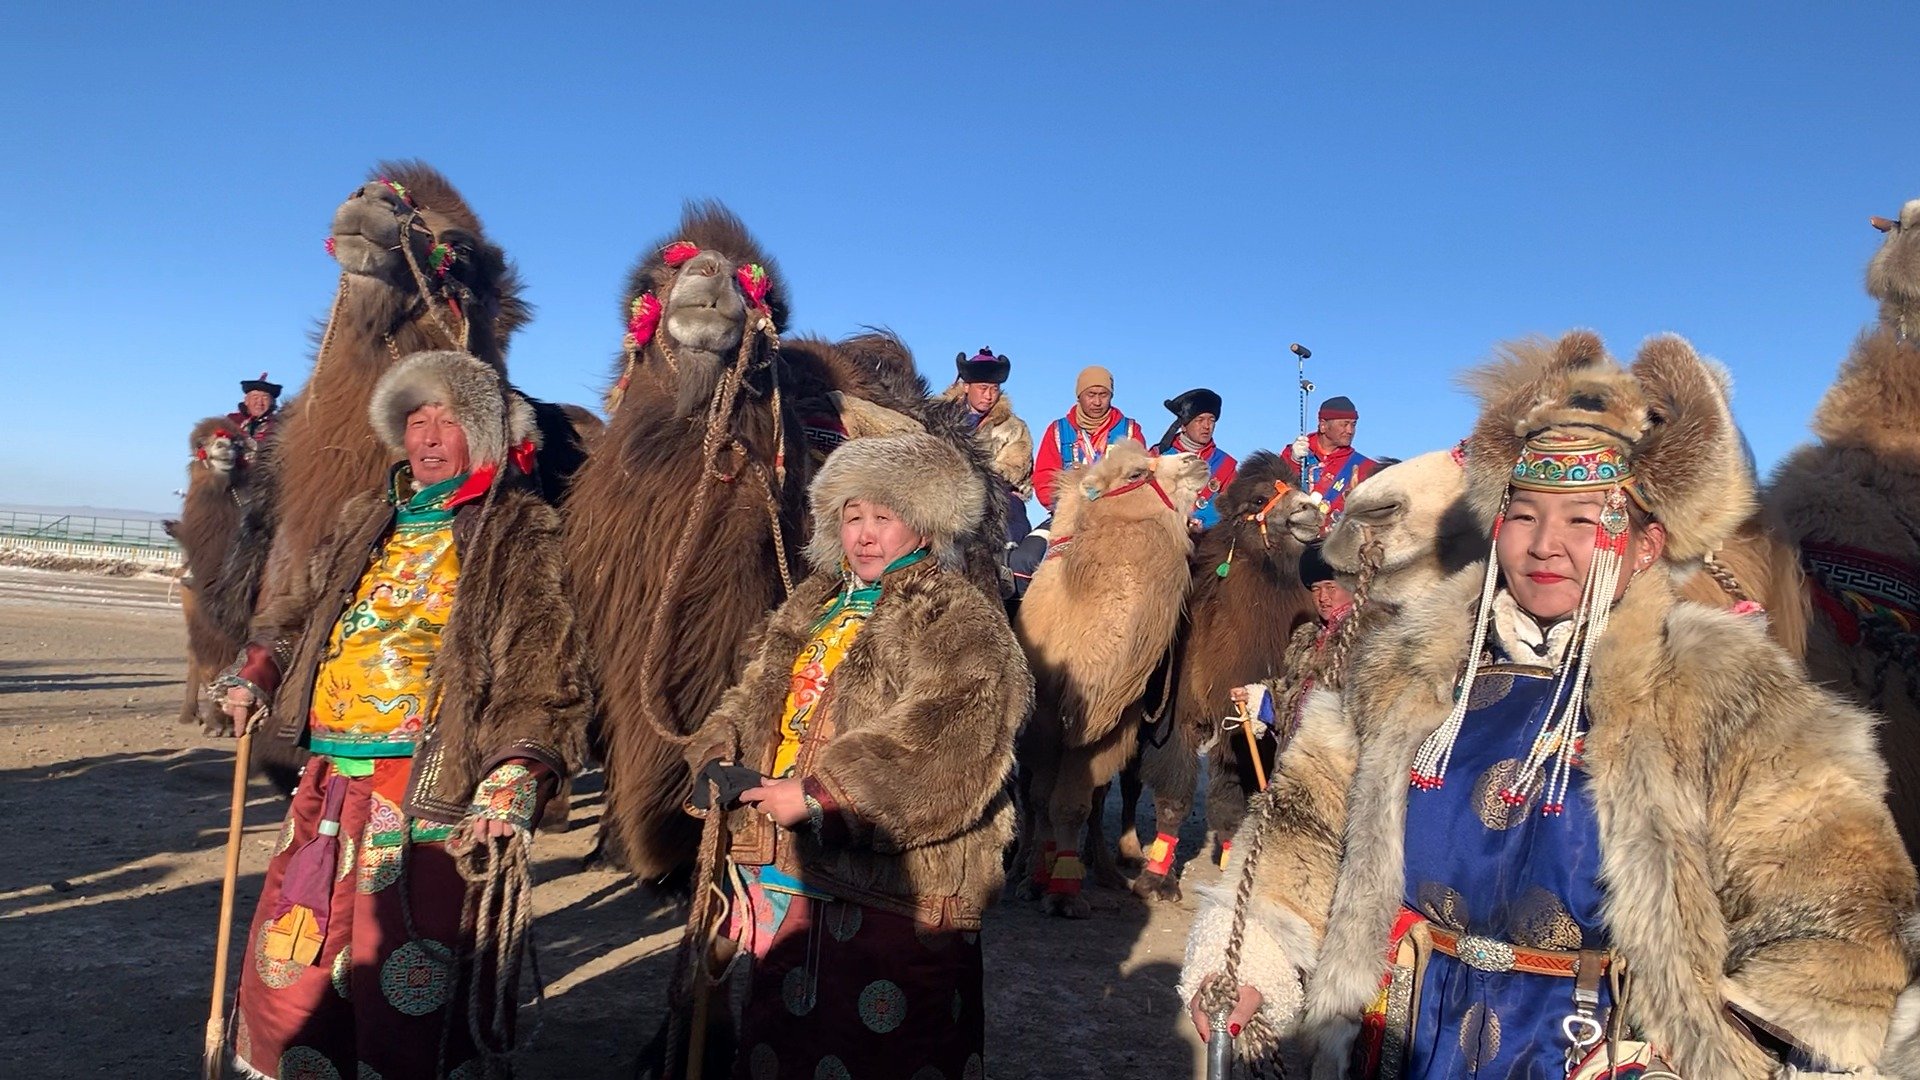 Өмнөговь аймагт зохион байгуулагдсан “Түмэн тэмээний баяр”-т дотоод, гадаадын 8700 гаруй жуулчин оролцжээ